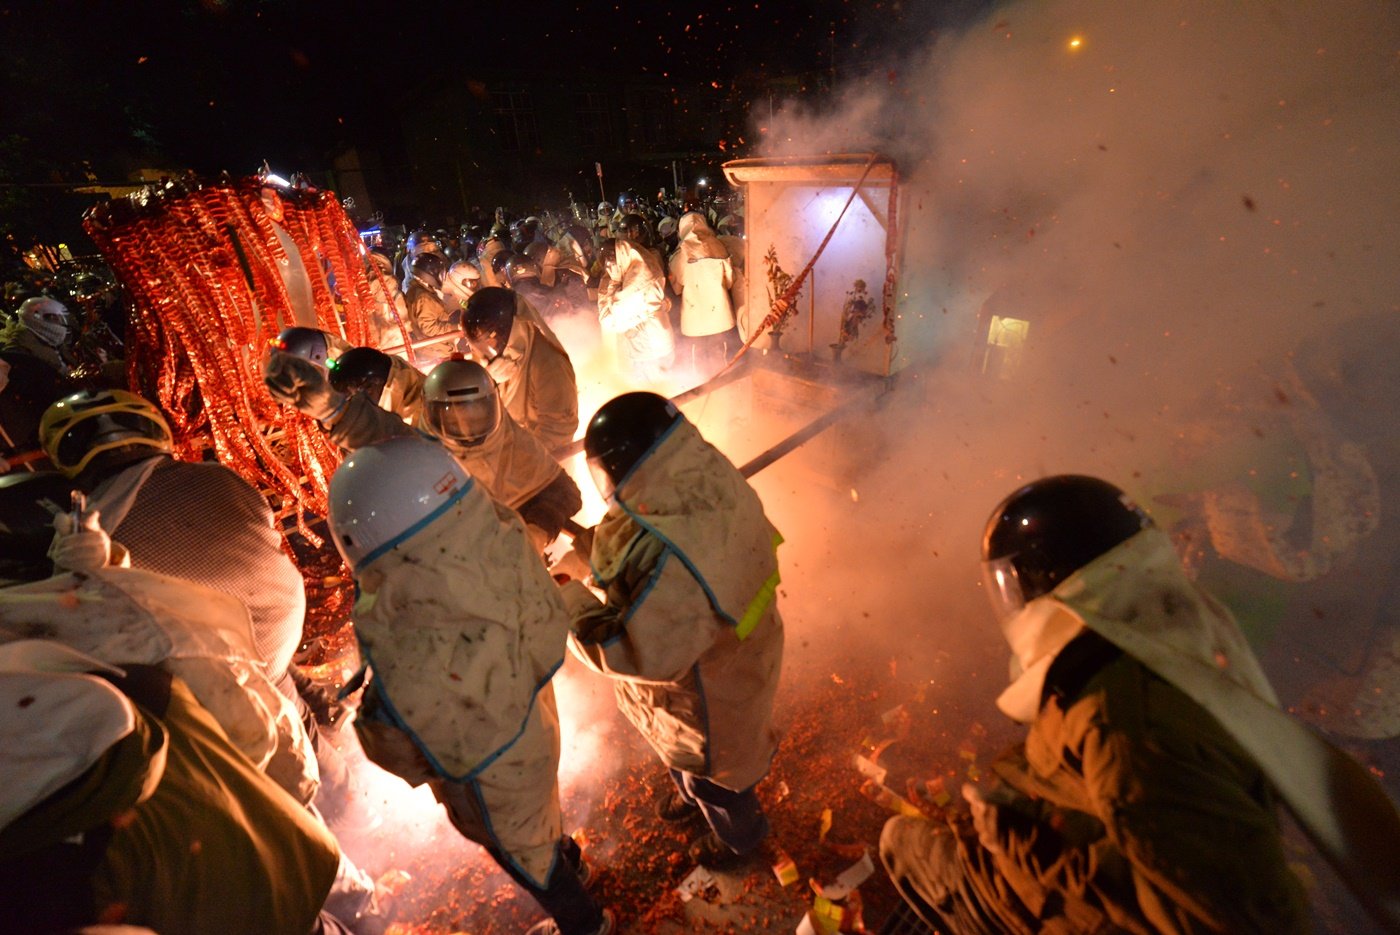 盐水蜂炮名列世界三大民俗庆典，享有“北天灯‧南蜂炮”的美名，是台南独特的民间传统民俗活动。（照片由《诗华日报》摄影罗君信提供）